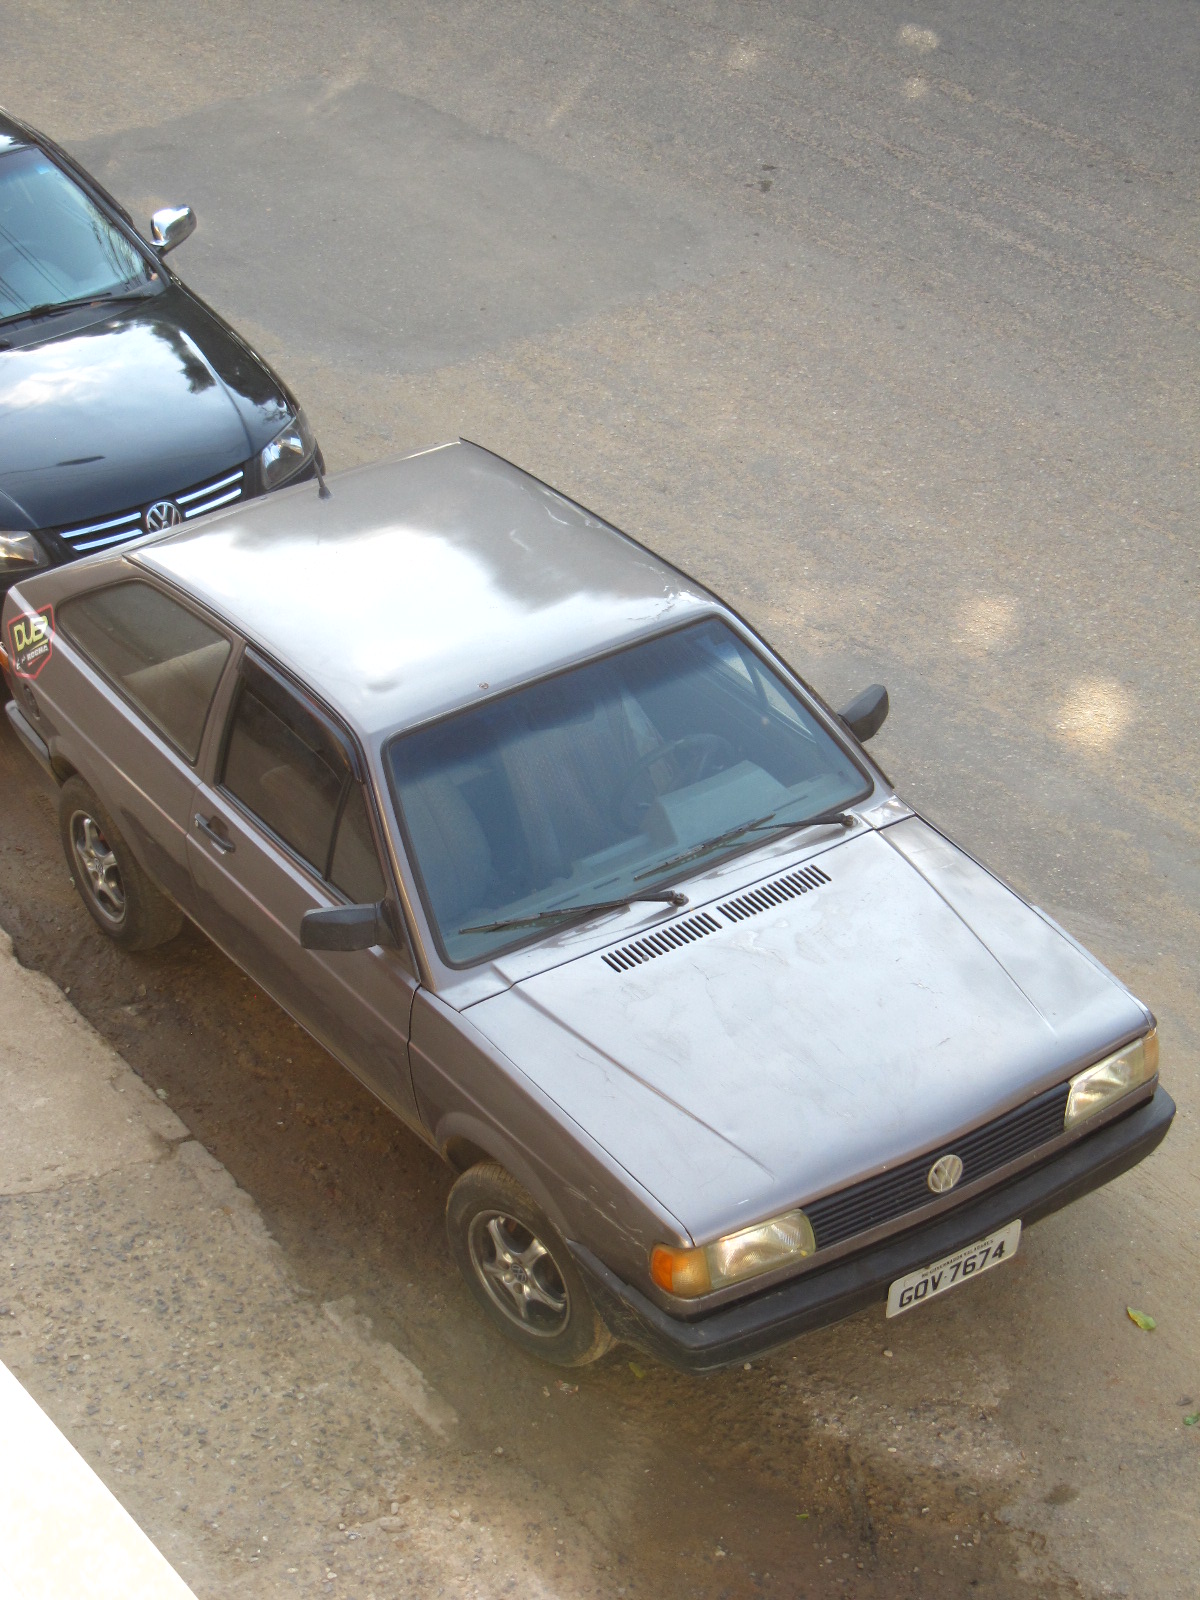 Gol 1995 - Classificados de veículos antigos de coleção e especiais